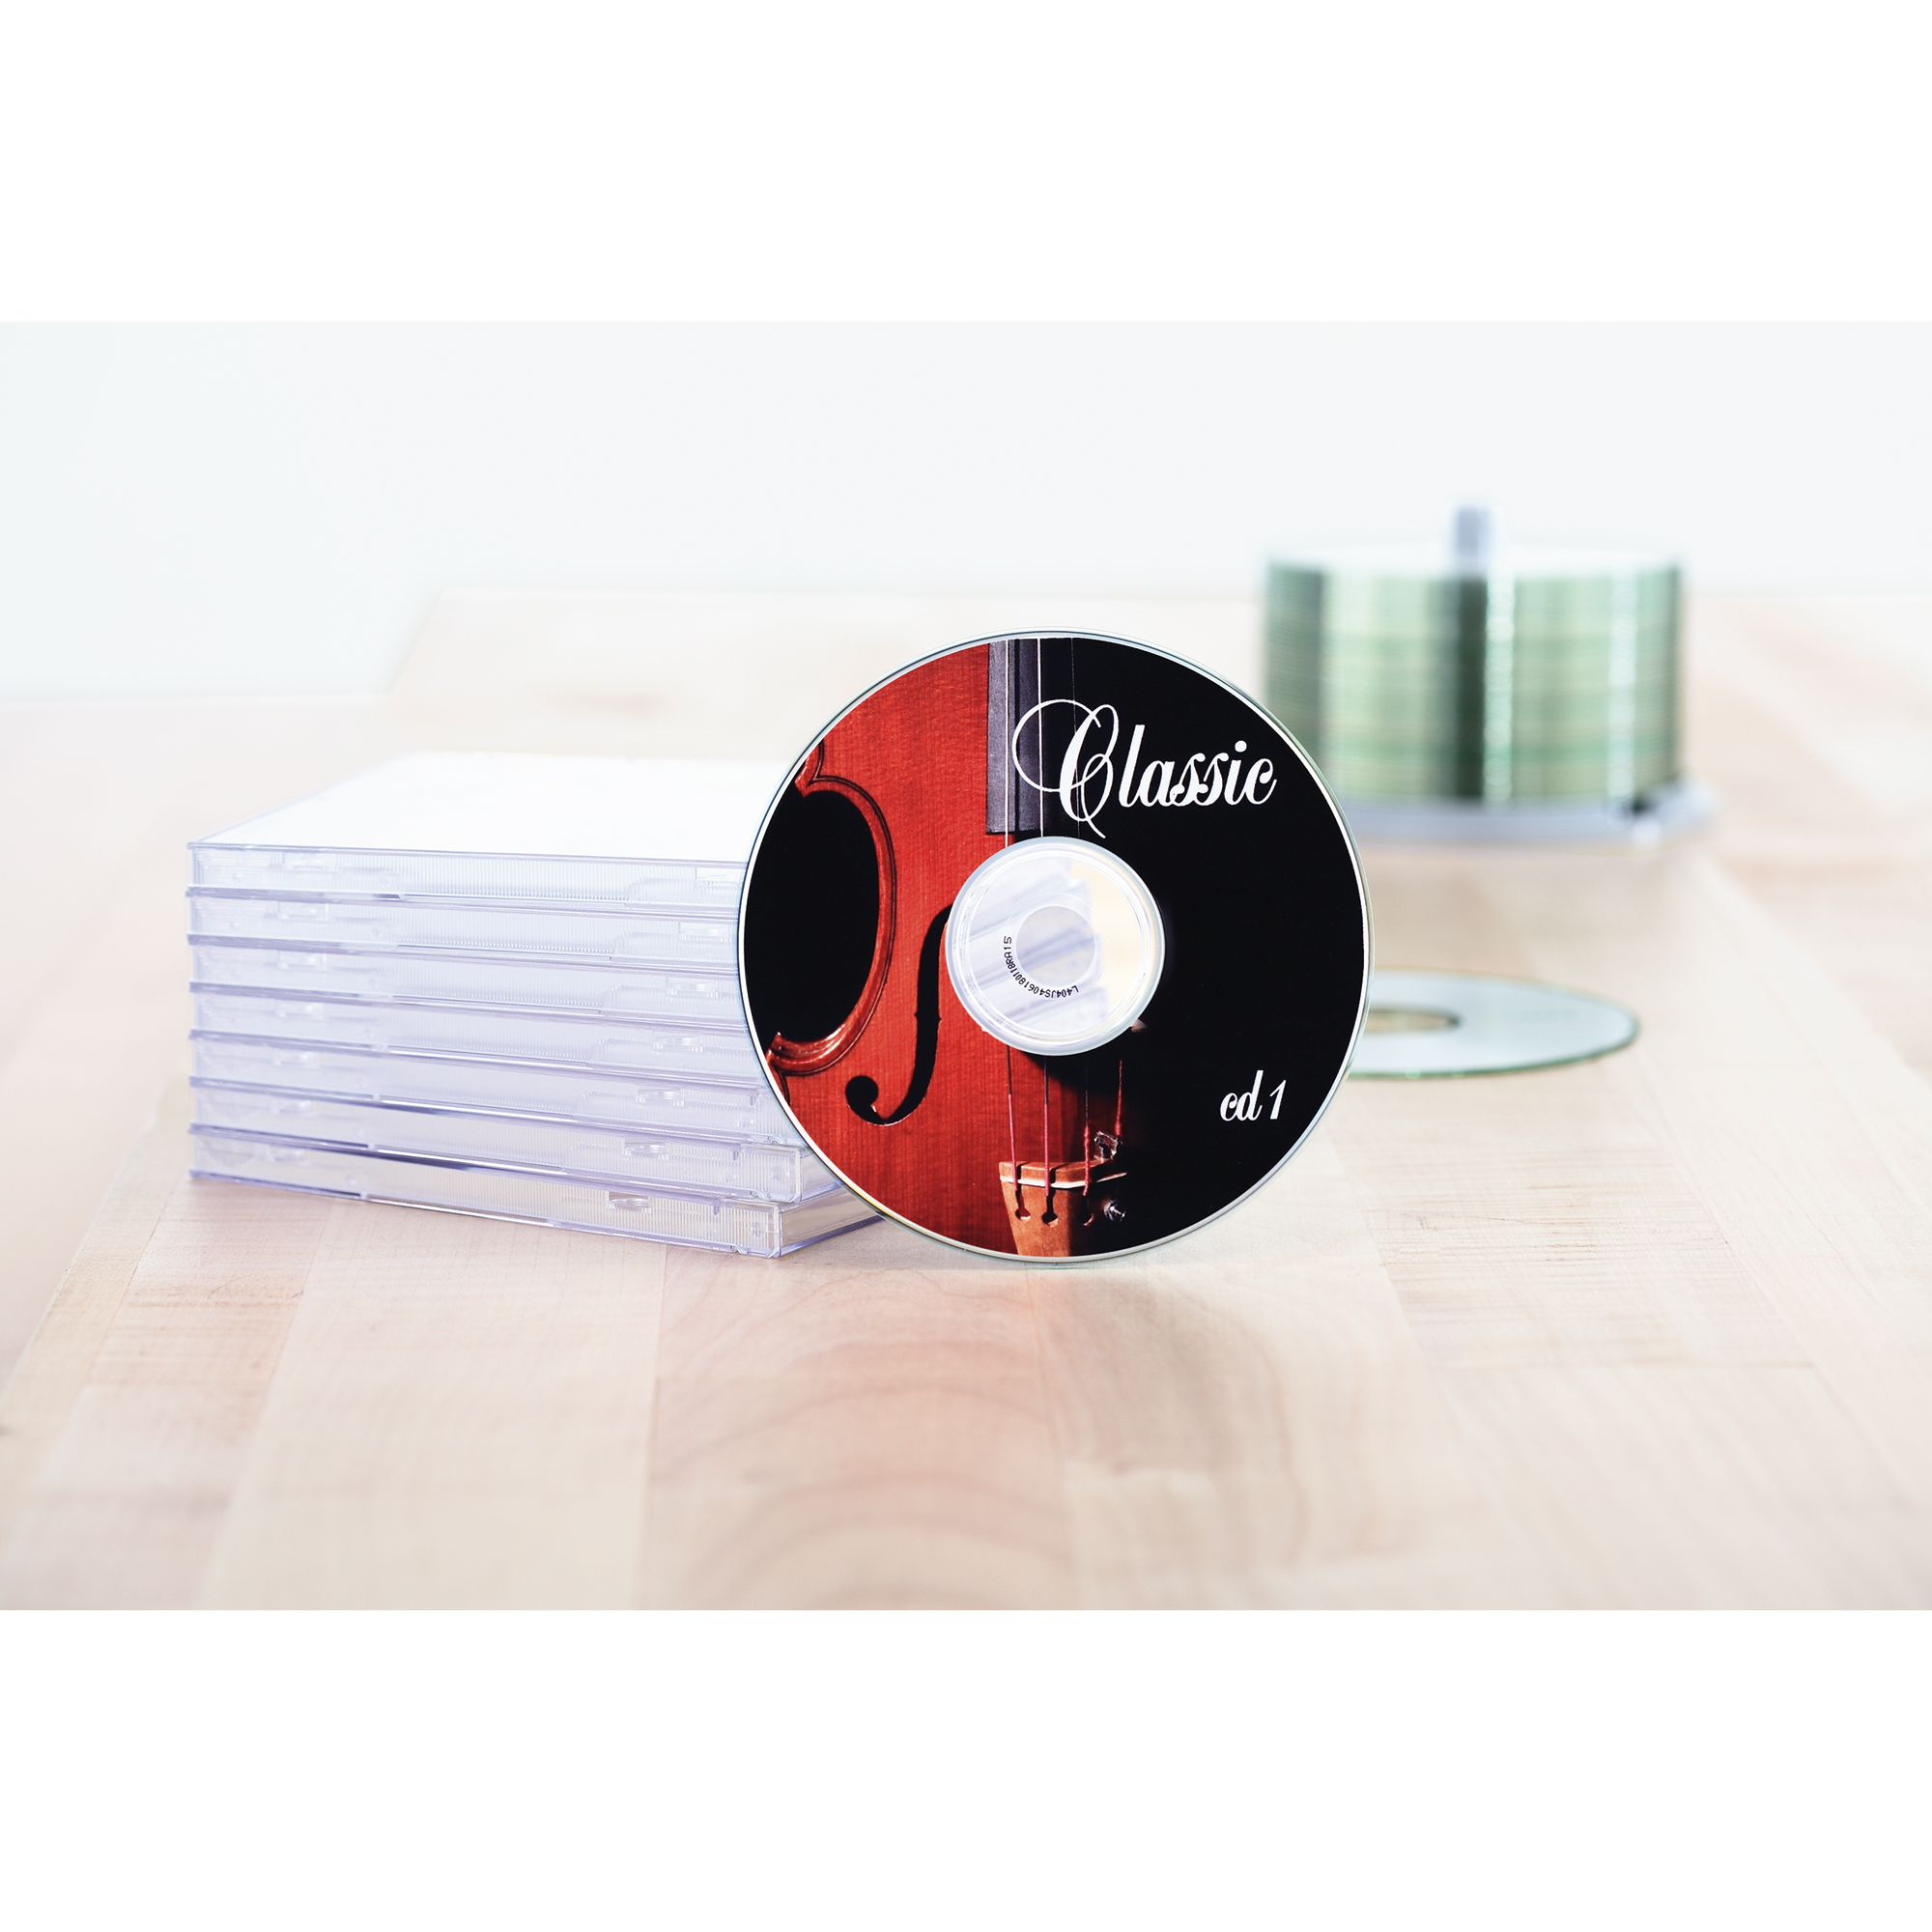 HERMA CD/DVD Etikett weiß, 116 mm, mit Positionierhilfe, Kleinpackung